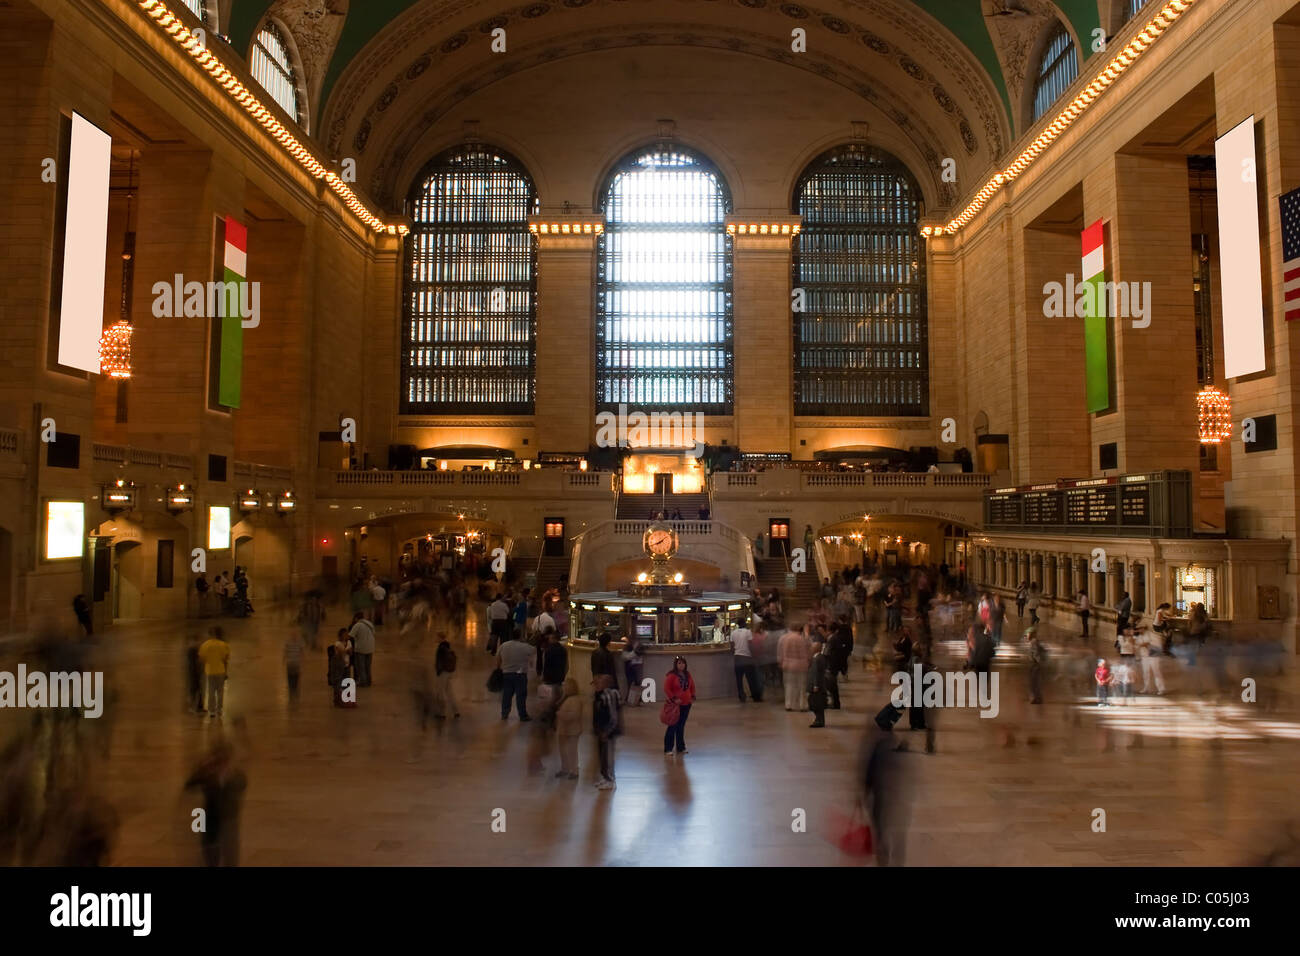 Foto temporizzata di persone sfocate che camminano attraverso la stazione ferroviaria Grand Central Terminal a New York City con una donna riconoscibile che sta da sola Foto Stock